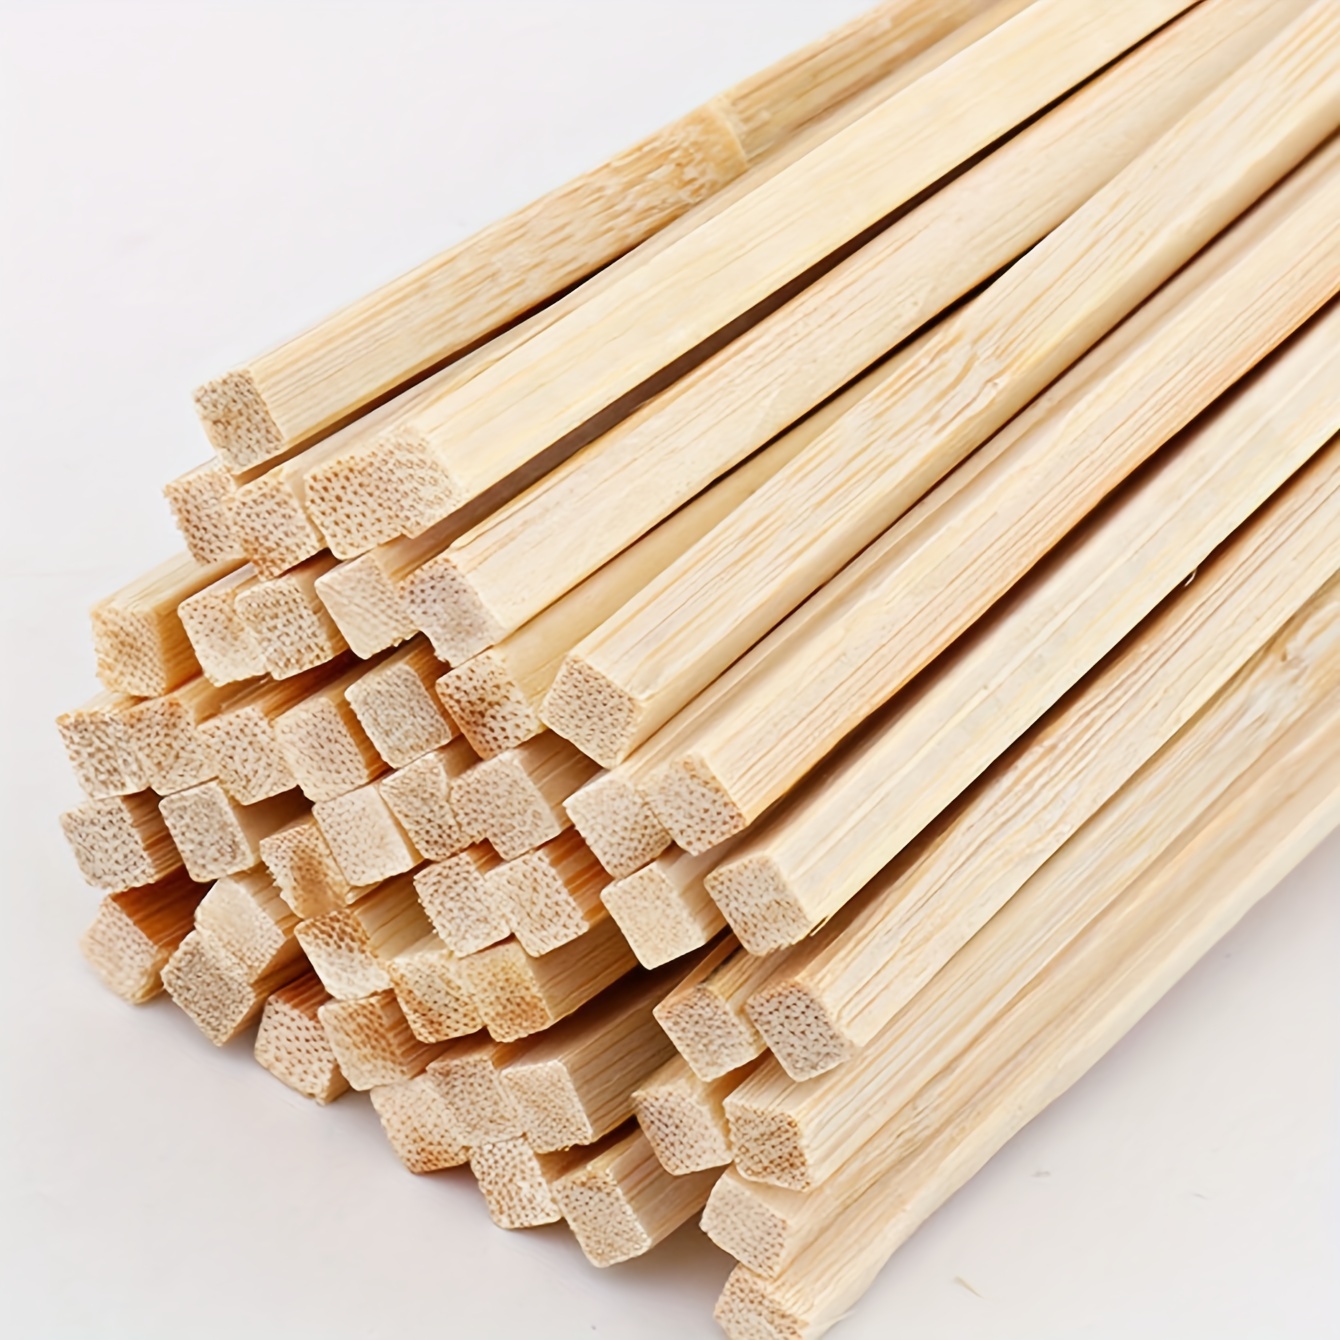 150 Pack 1/4 x 12 Inch Balsa Wood Sticks Hardwood Square Dowel Rods  Hardwood Unfinished Wooden Sticks, Wooden Dowel Craft Sticks for Craft DIY